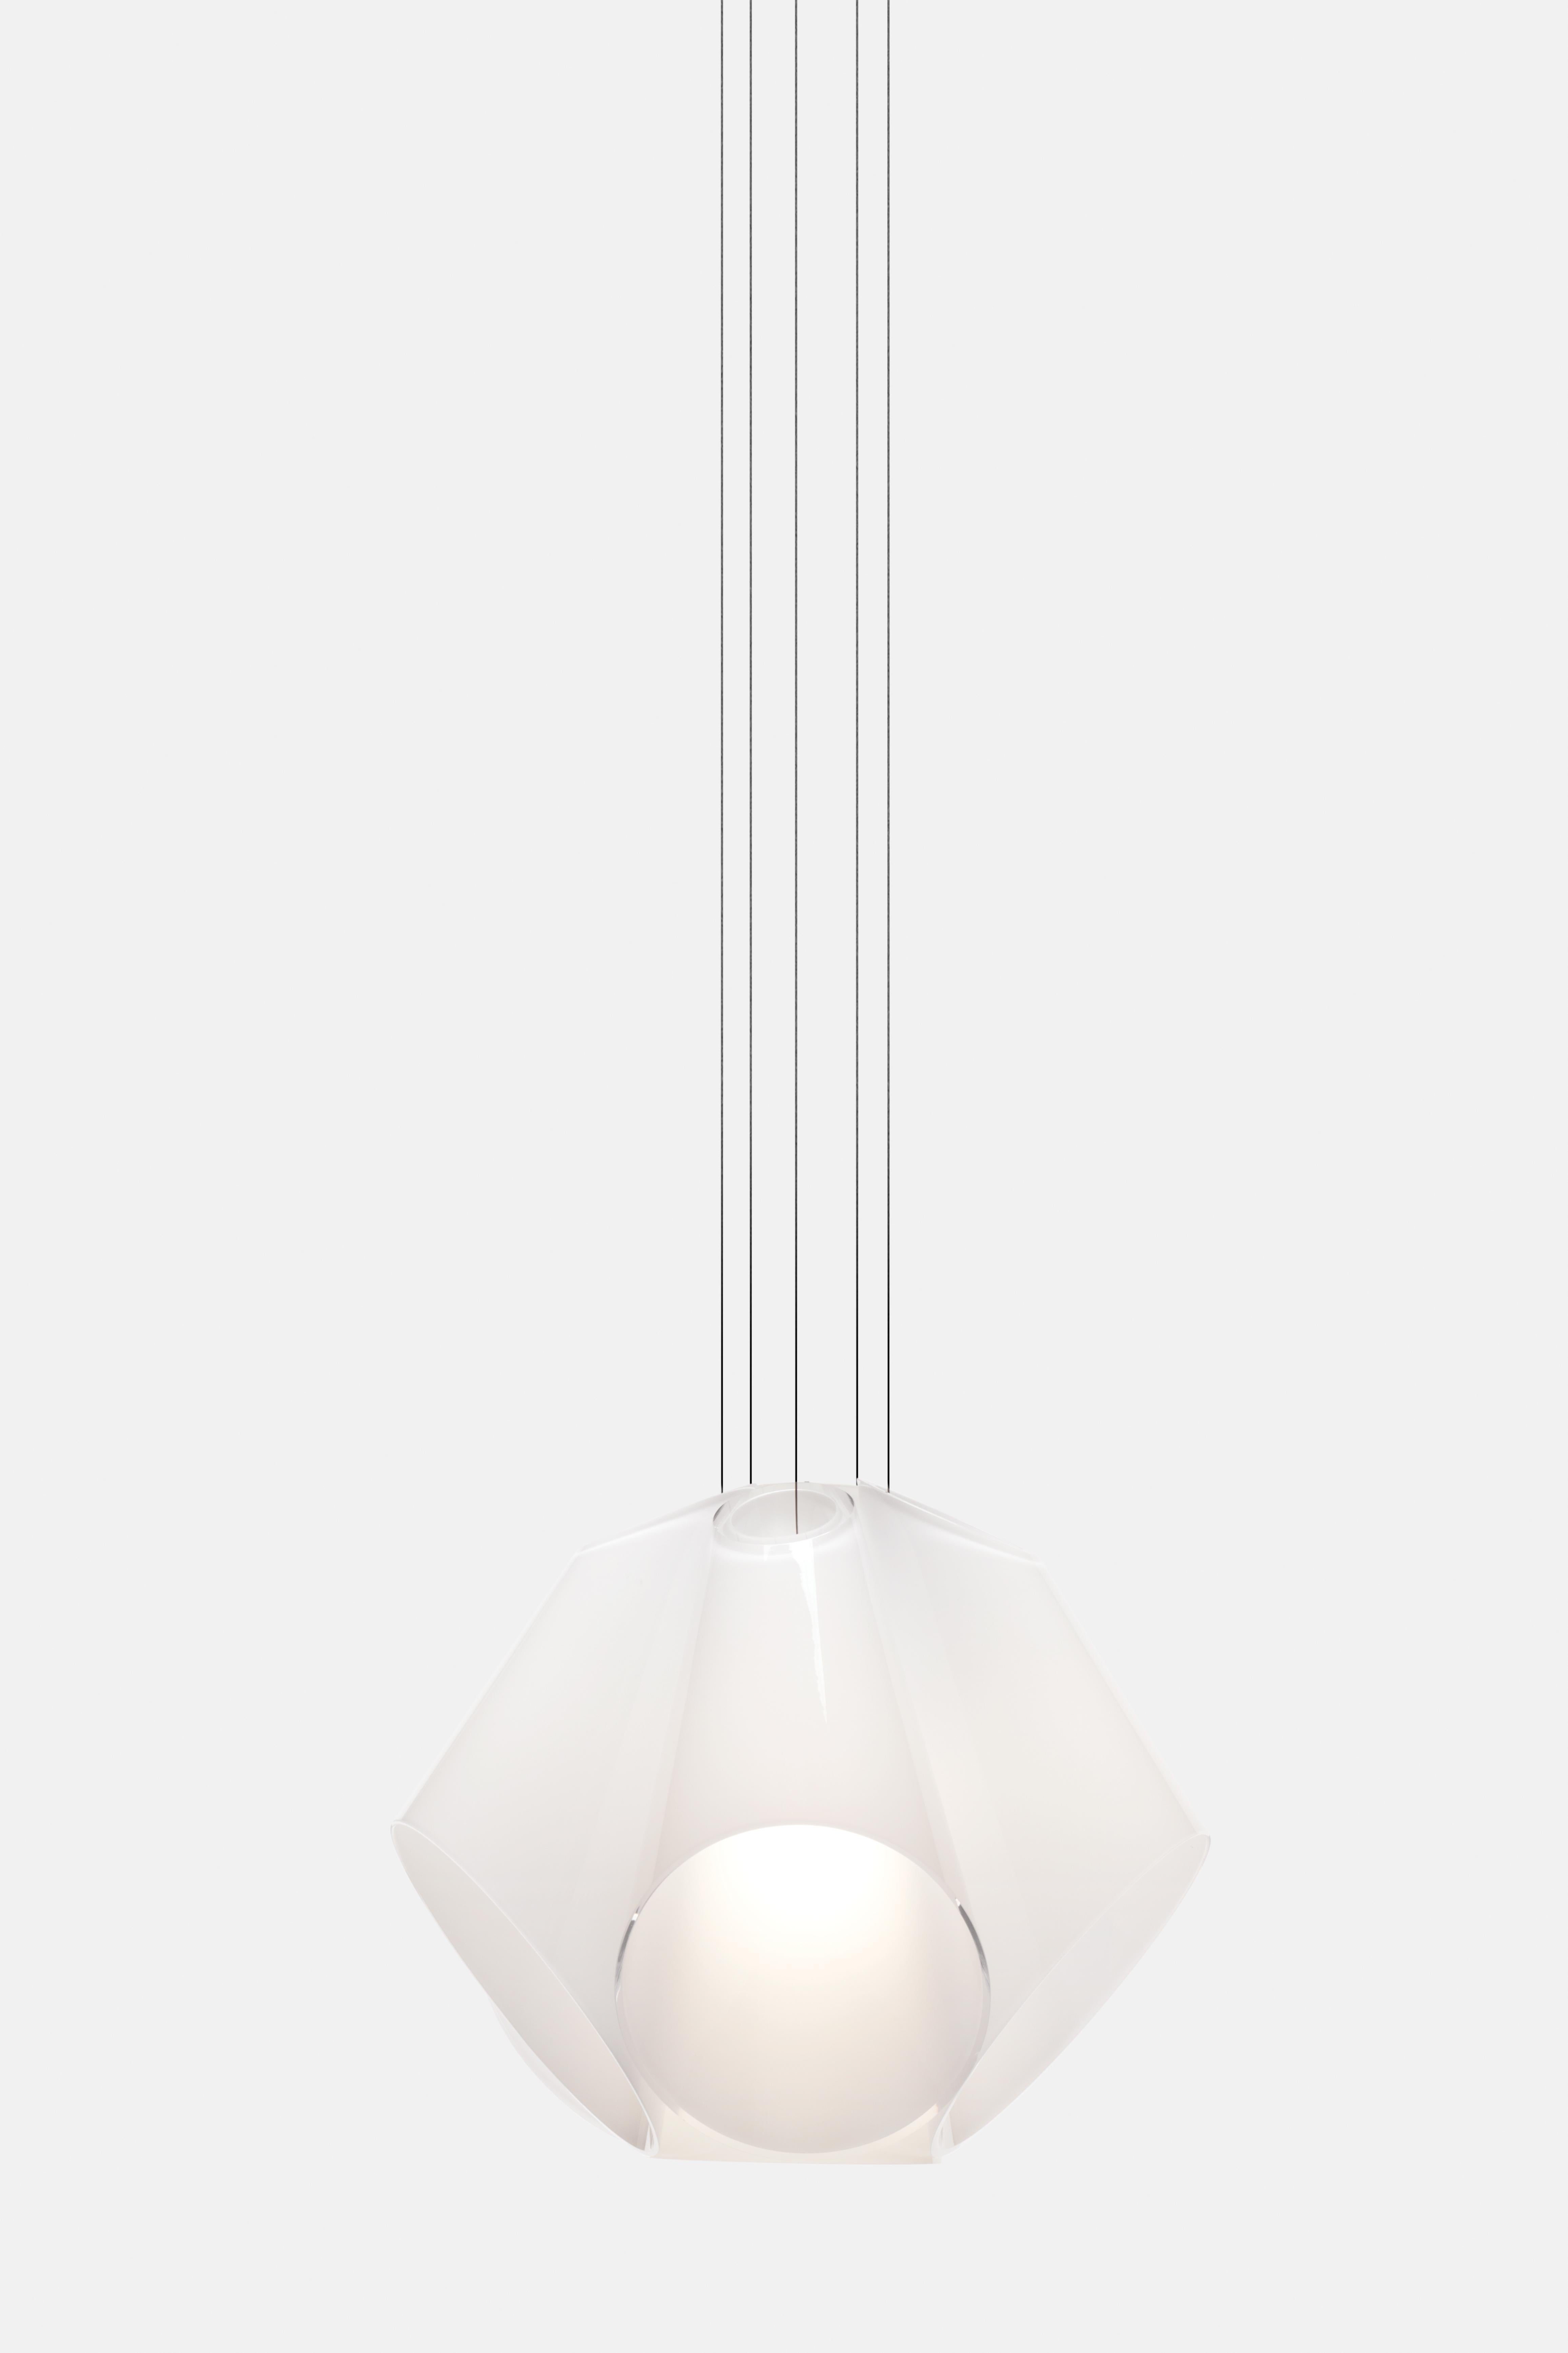 Le luminaire suspendu Super Conic révèle non seulement les détails de la zone qu'il éclaire, mais il ajoute également sa propre beauté délicate à son environnement. Constitué d'un bouquet de cônes en verre blanc disposés autour d'un cône diffuseur